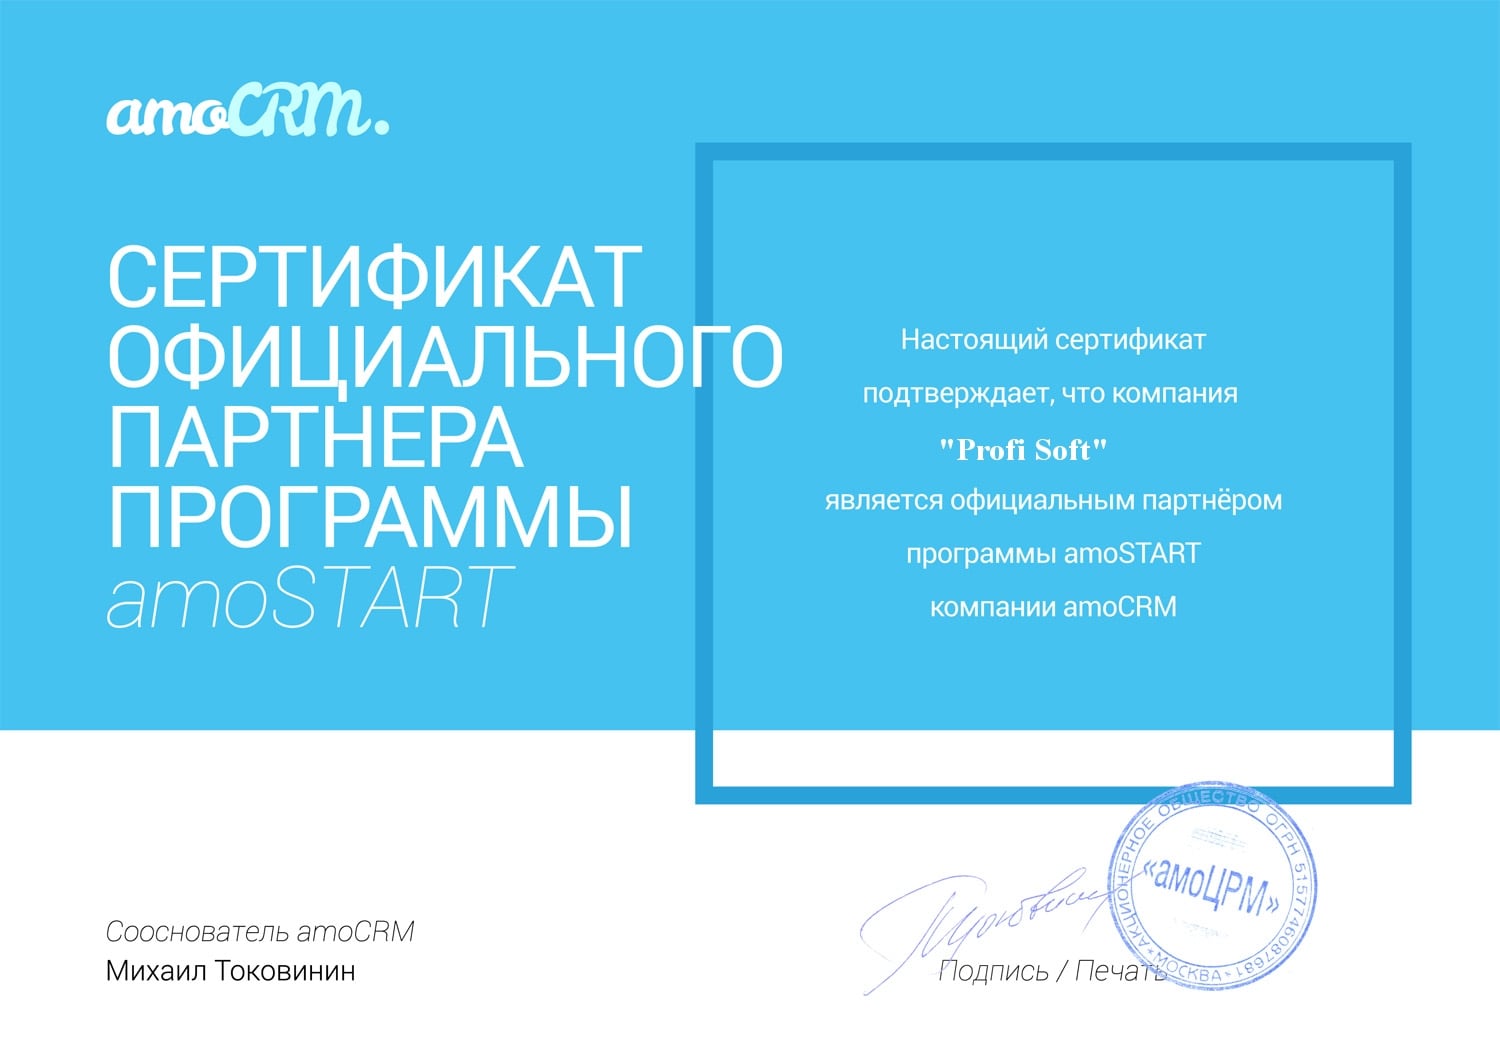 Сертификат партнера amoCRM